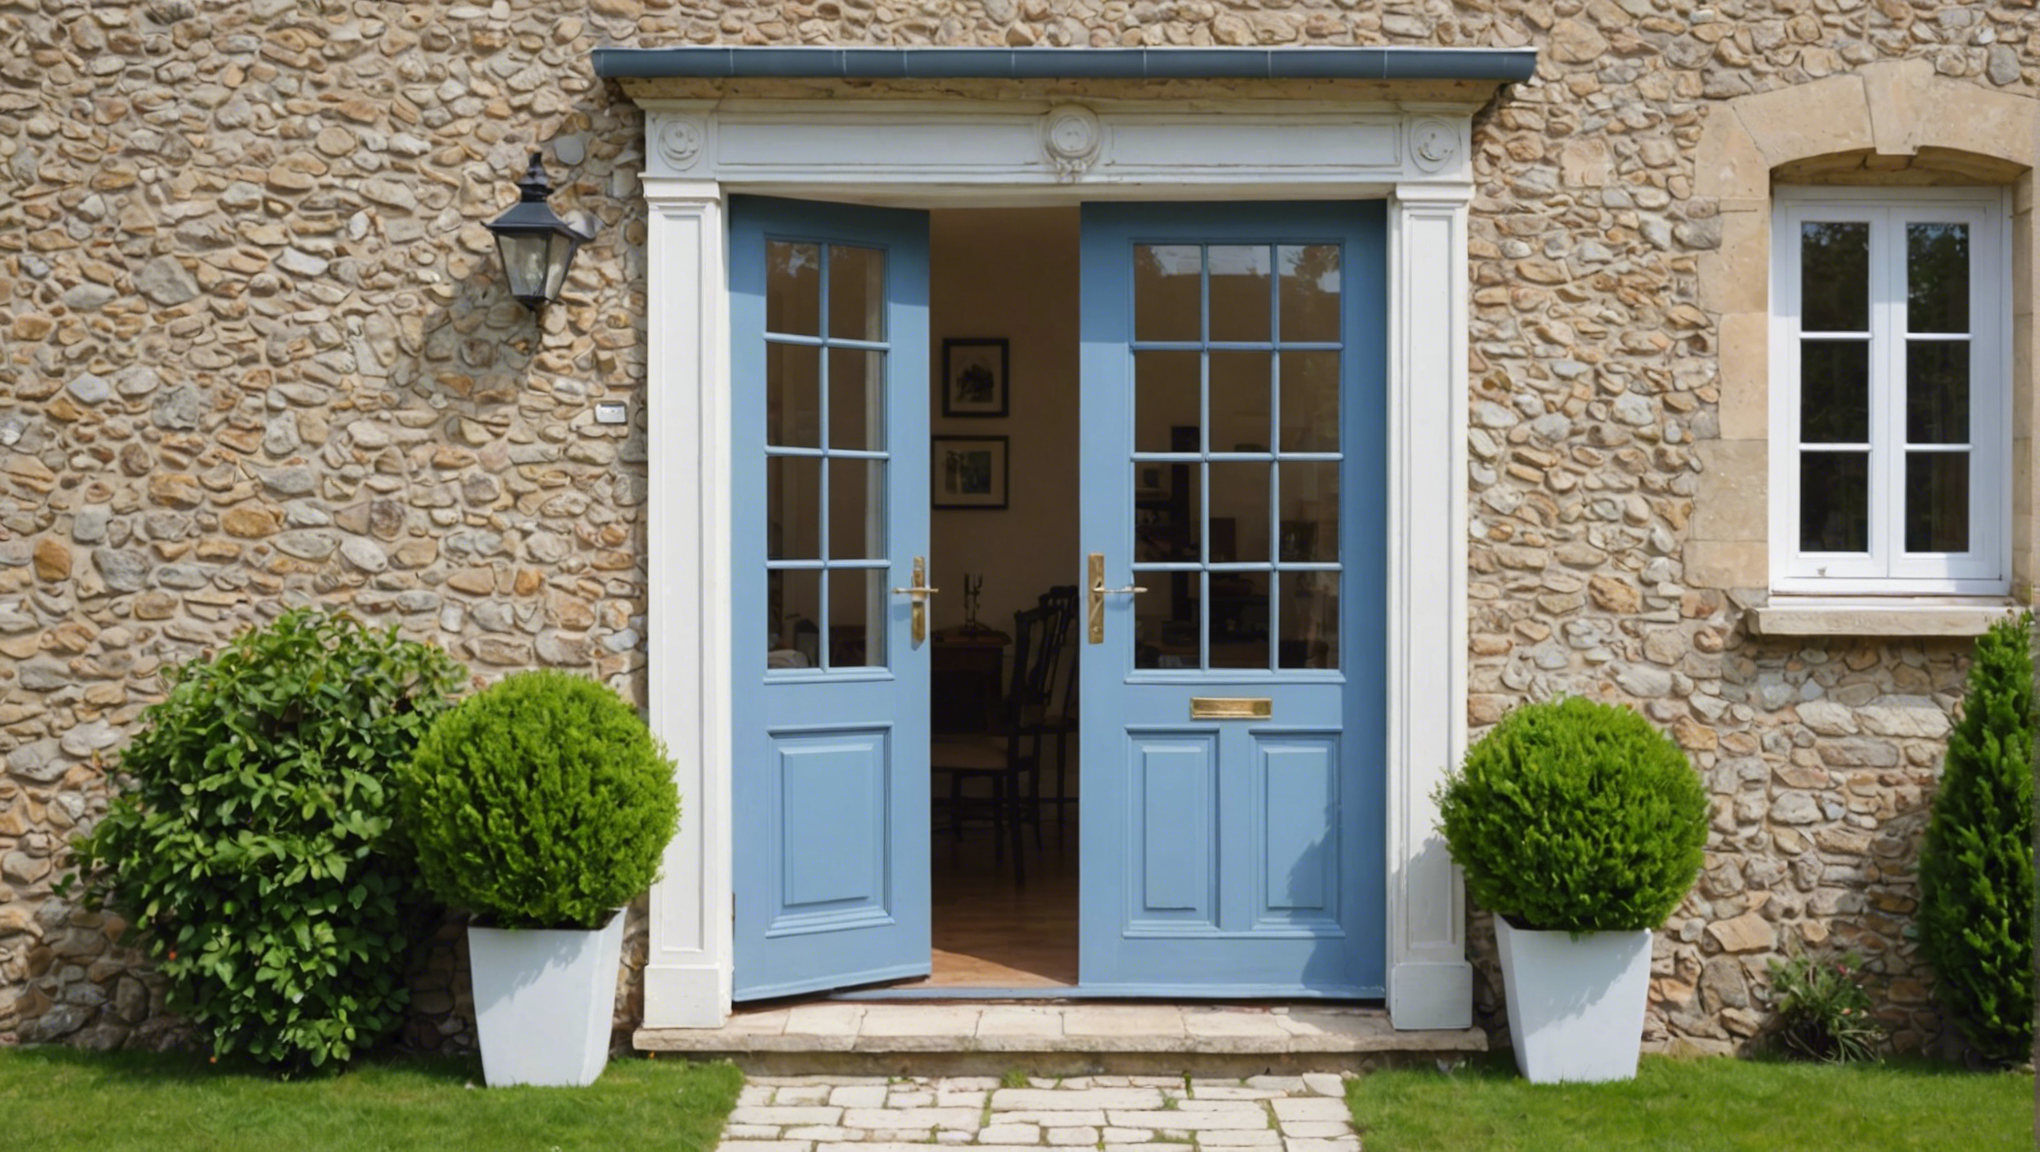 découvrez nos conseils pour choisir la porte-fenêtre parfaite pour votre maison. optez pour la qualité et l'esthétique avec nos recommandations.